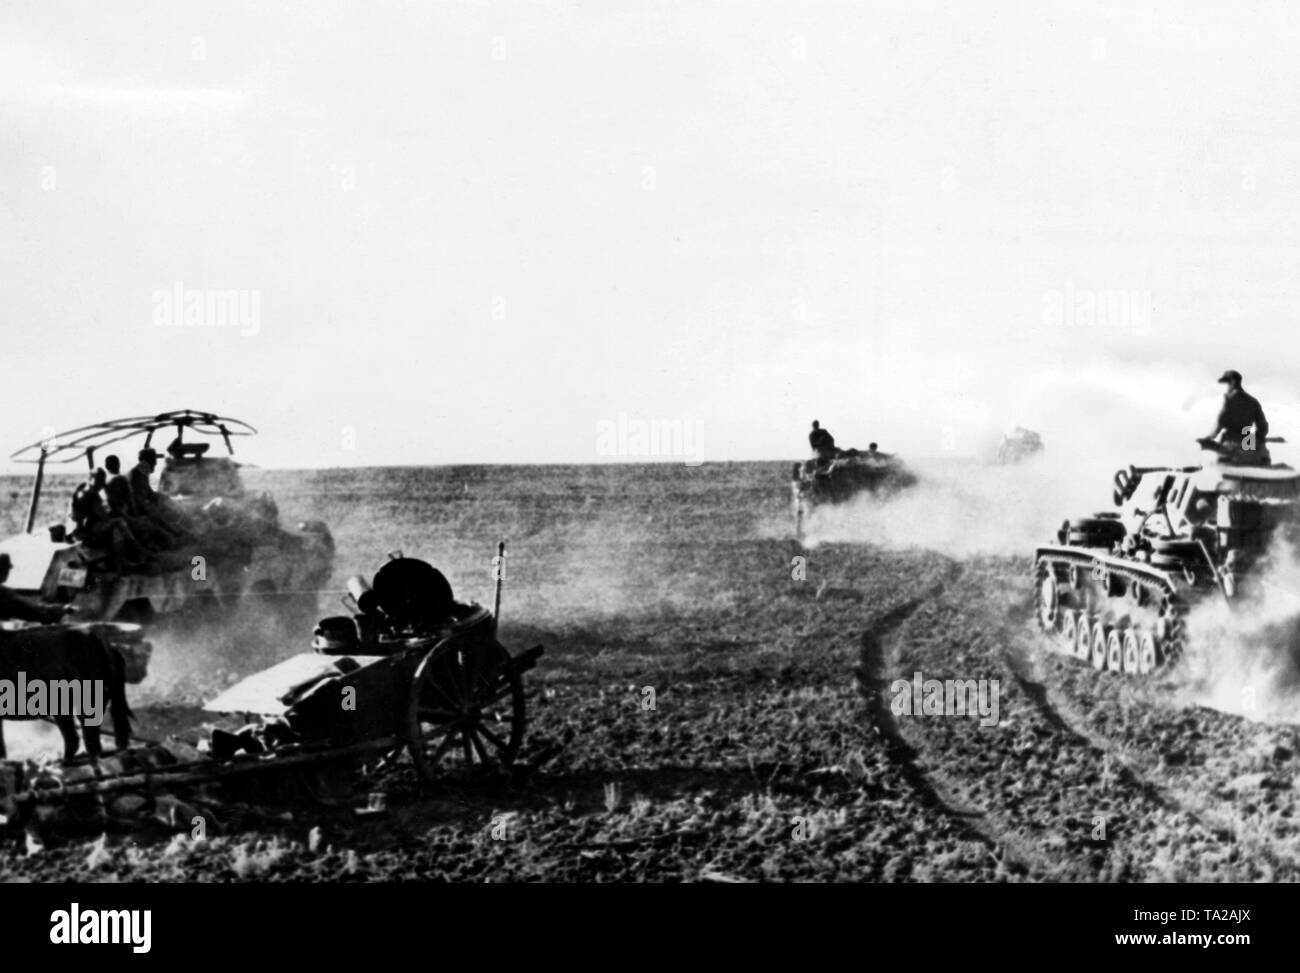 Les réservoirs de la Wehrmacht avance dans un champ sur le front de l'Est. En dehors d'un Panzer IV, il y a aussi une voiture de reconnaissance blindé avec cadre antennes sur la gauche entre les véhicules. Photo de l'entreprise de propagande (PK) : SS correspondant de guerre Adendorf. Banque D'Images